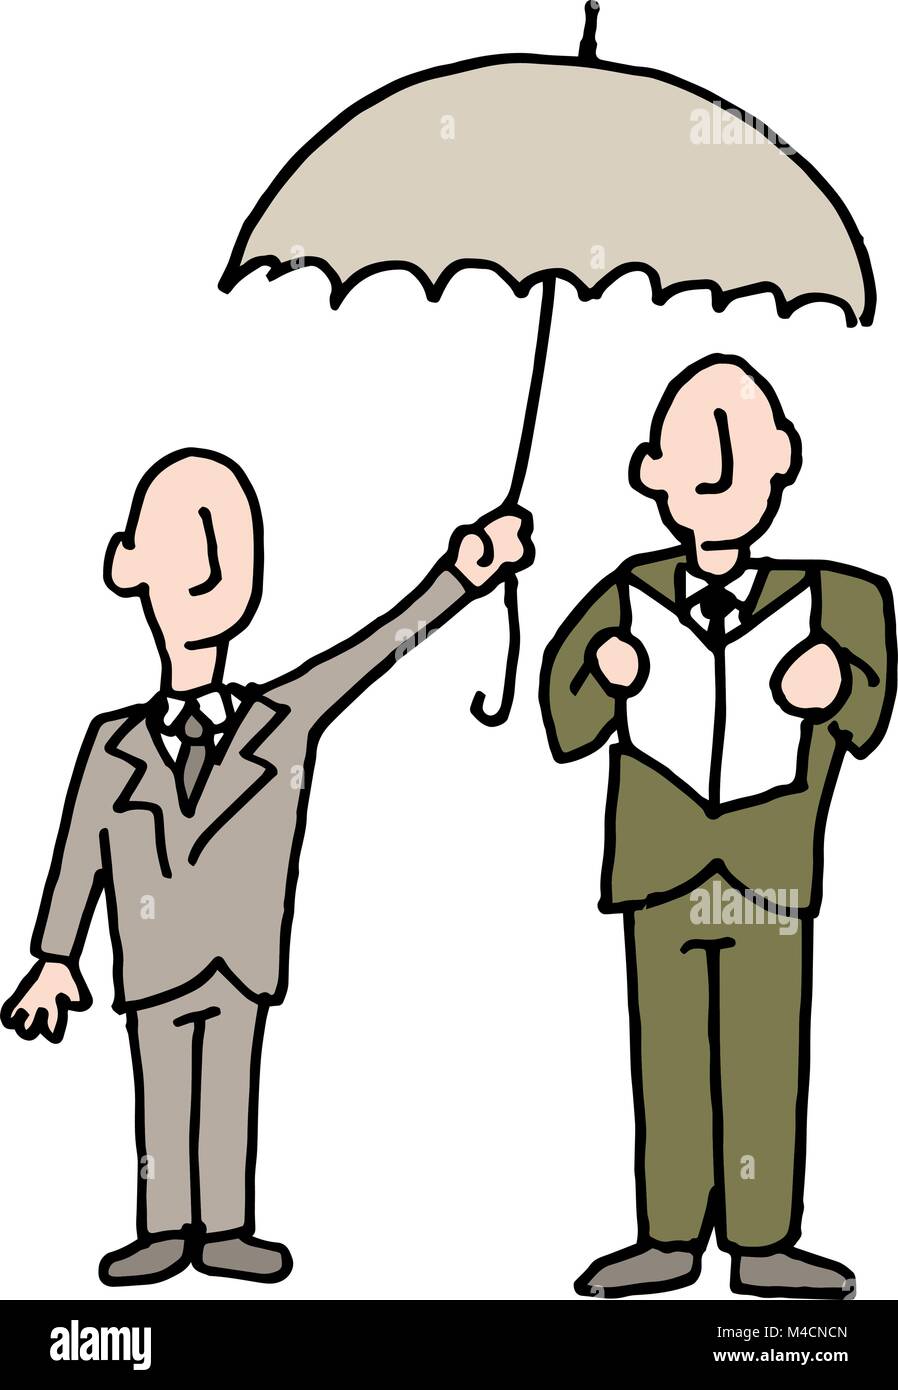 Ein Bild von einem Mann seinen Schirm Teilen mit einem anderen Mann. Stock Vektor